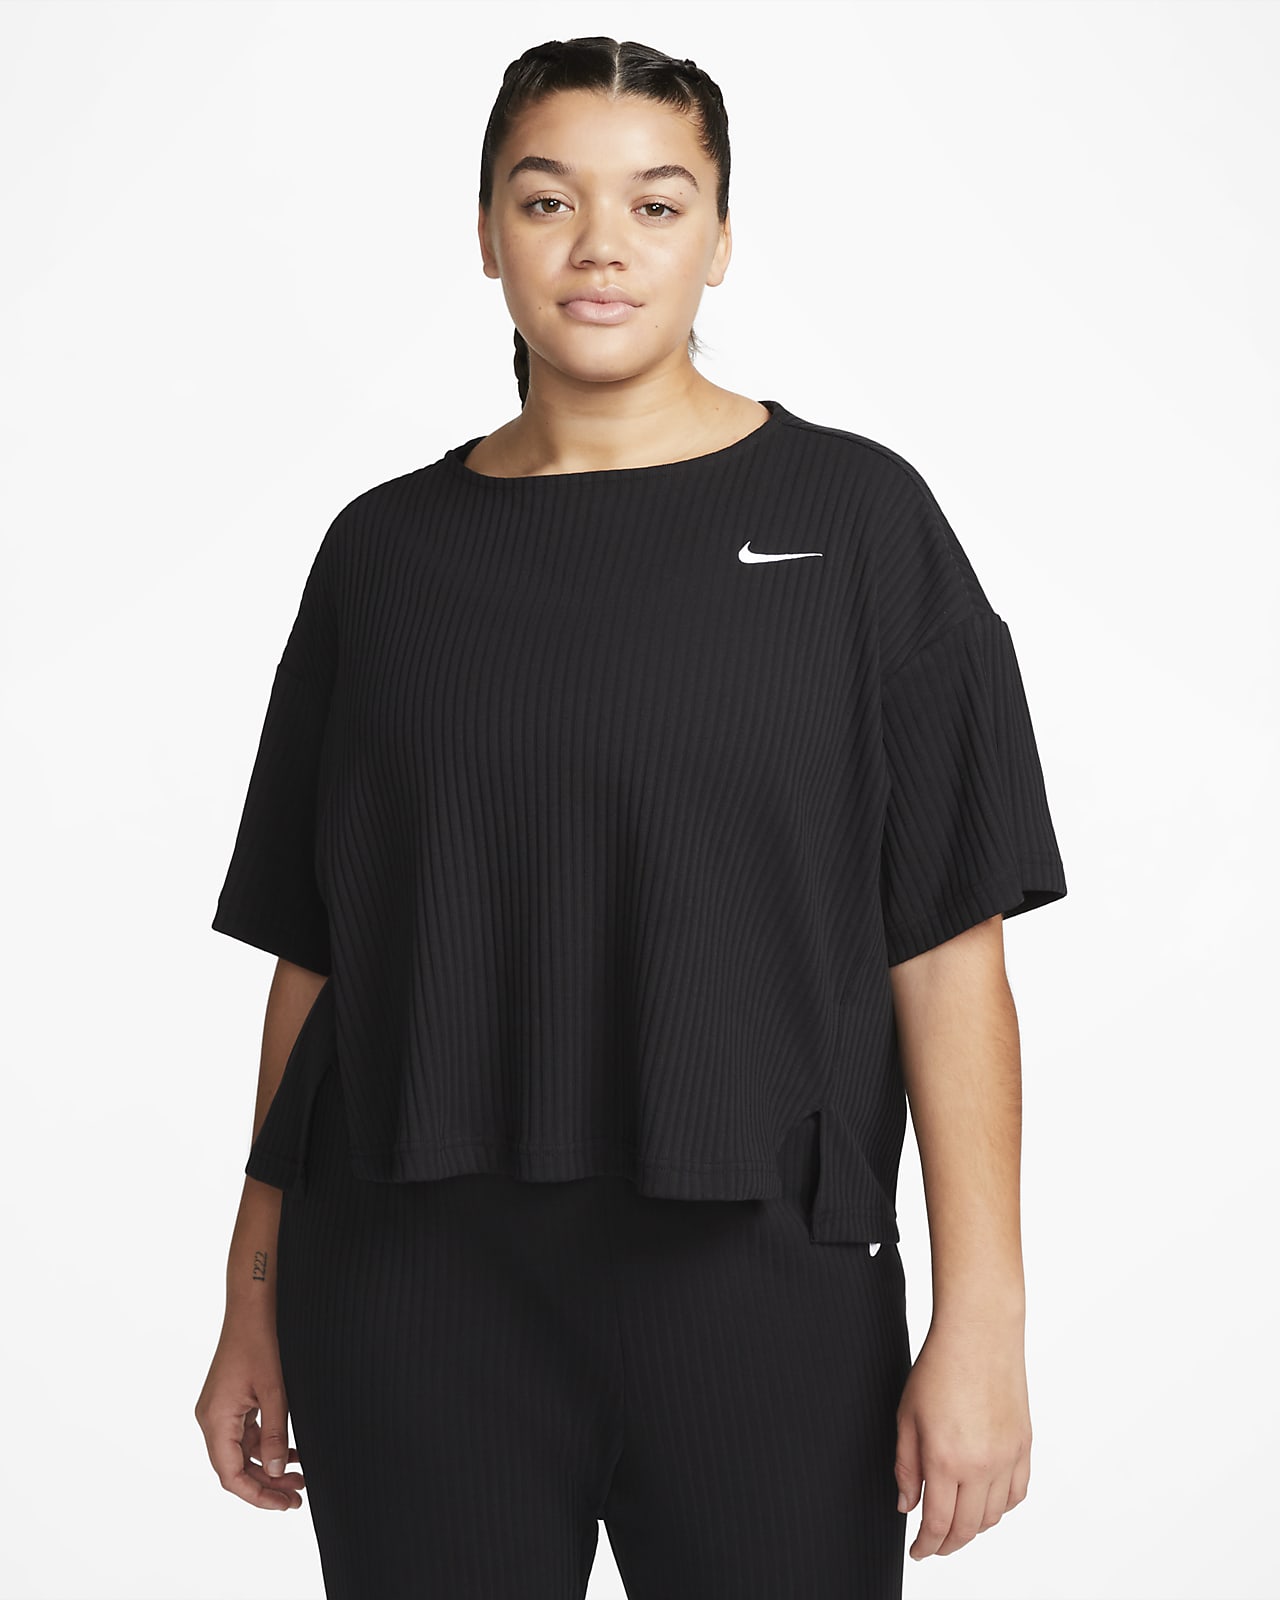 Nike Women's Jersey Short-Sleeve (Plus Size). Nike LU